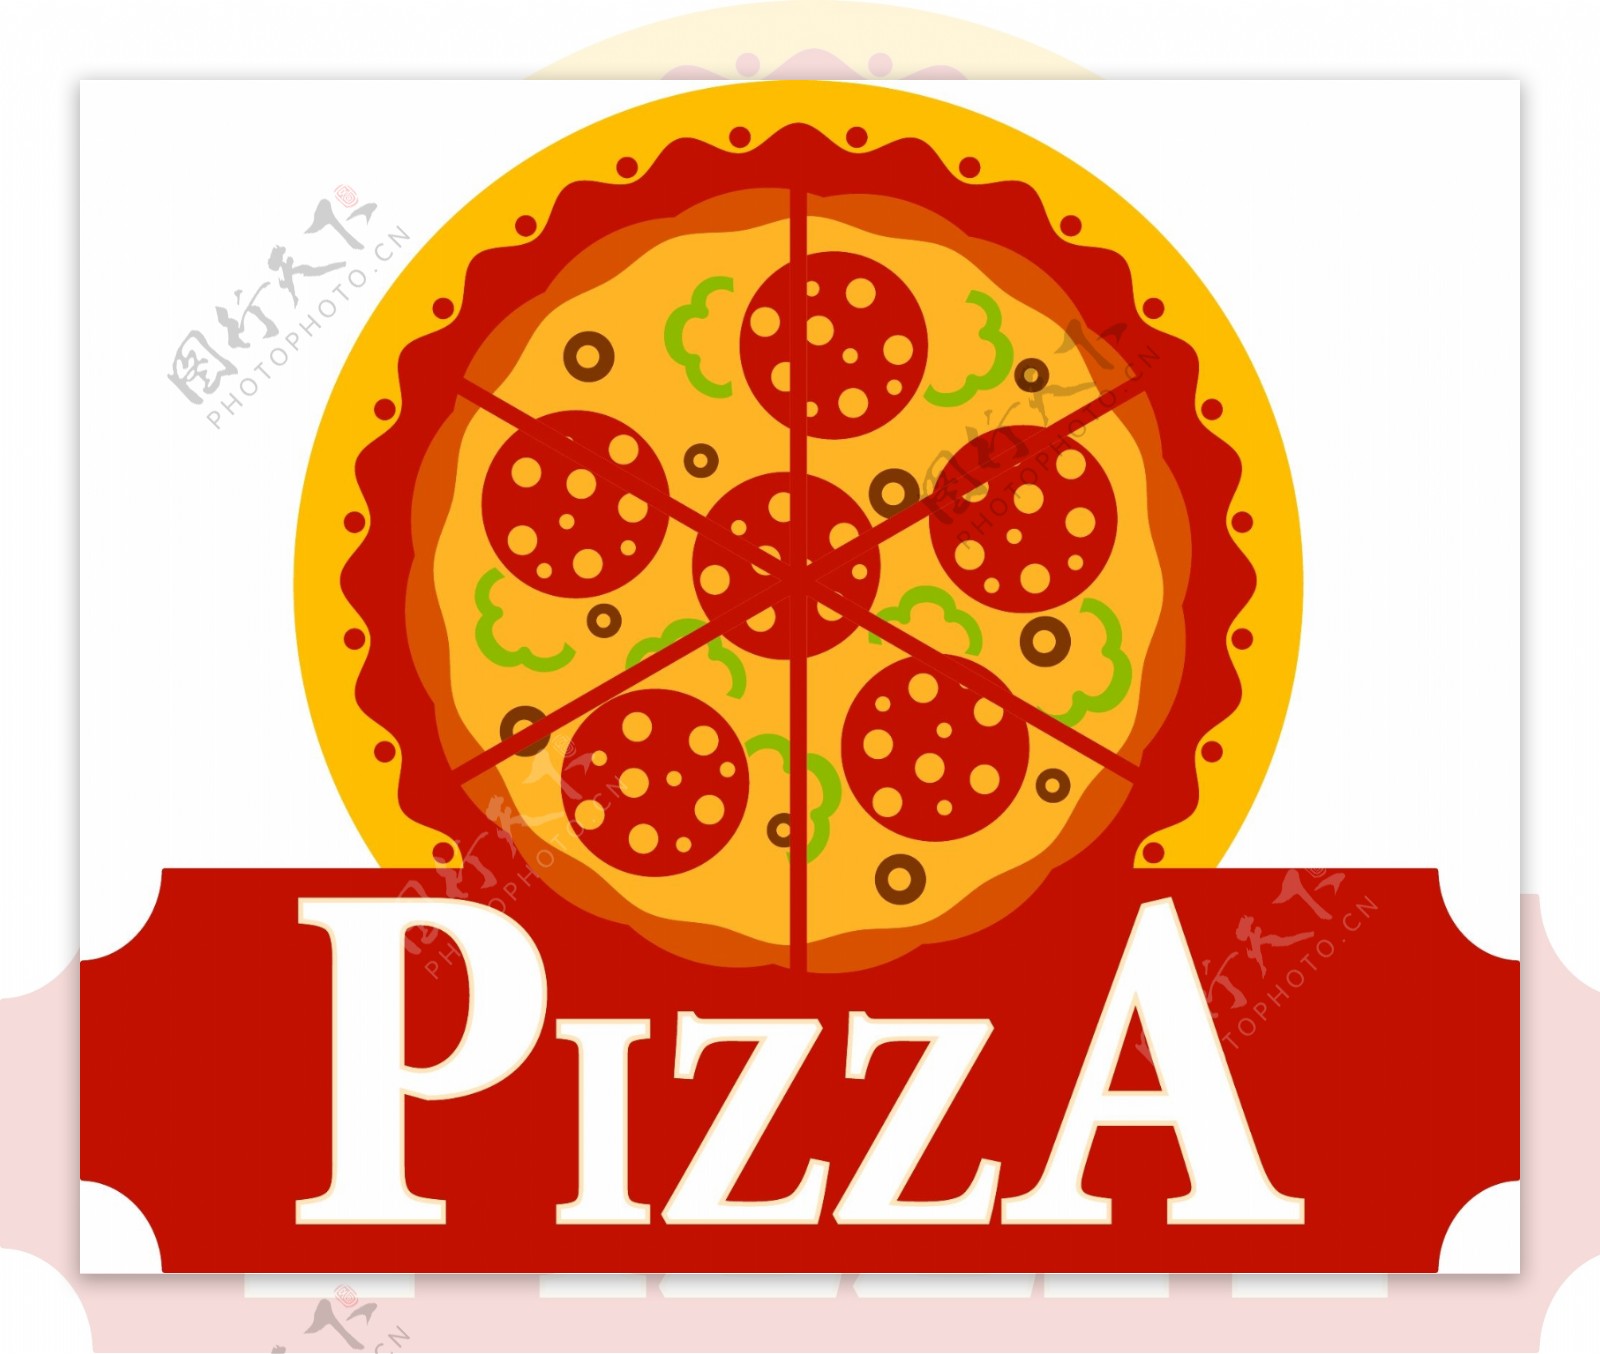 美食披萨标志